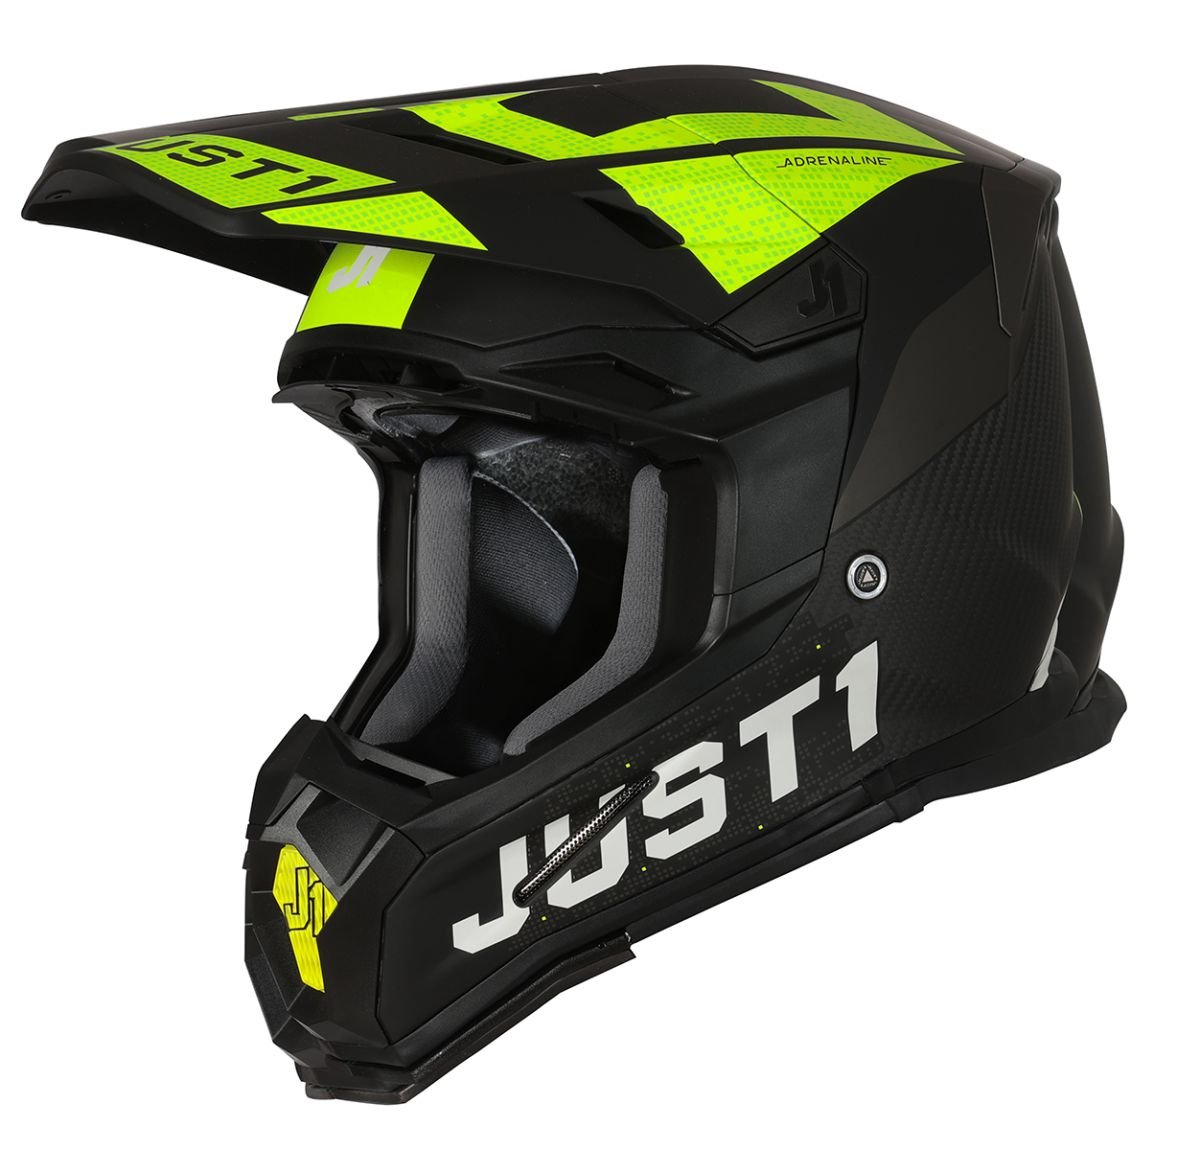 Image of Just1 Helmet J-22 Adrenaline Black Yellow Fluo Carbon Matt Offroad Helmet Size M EN